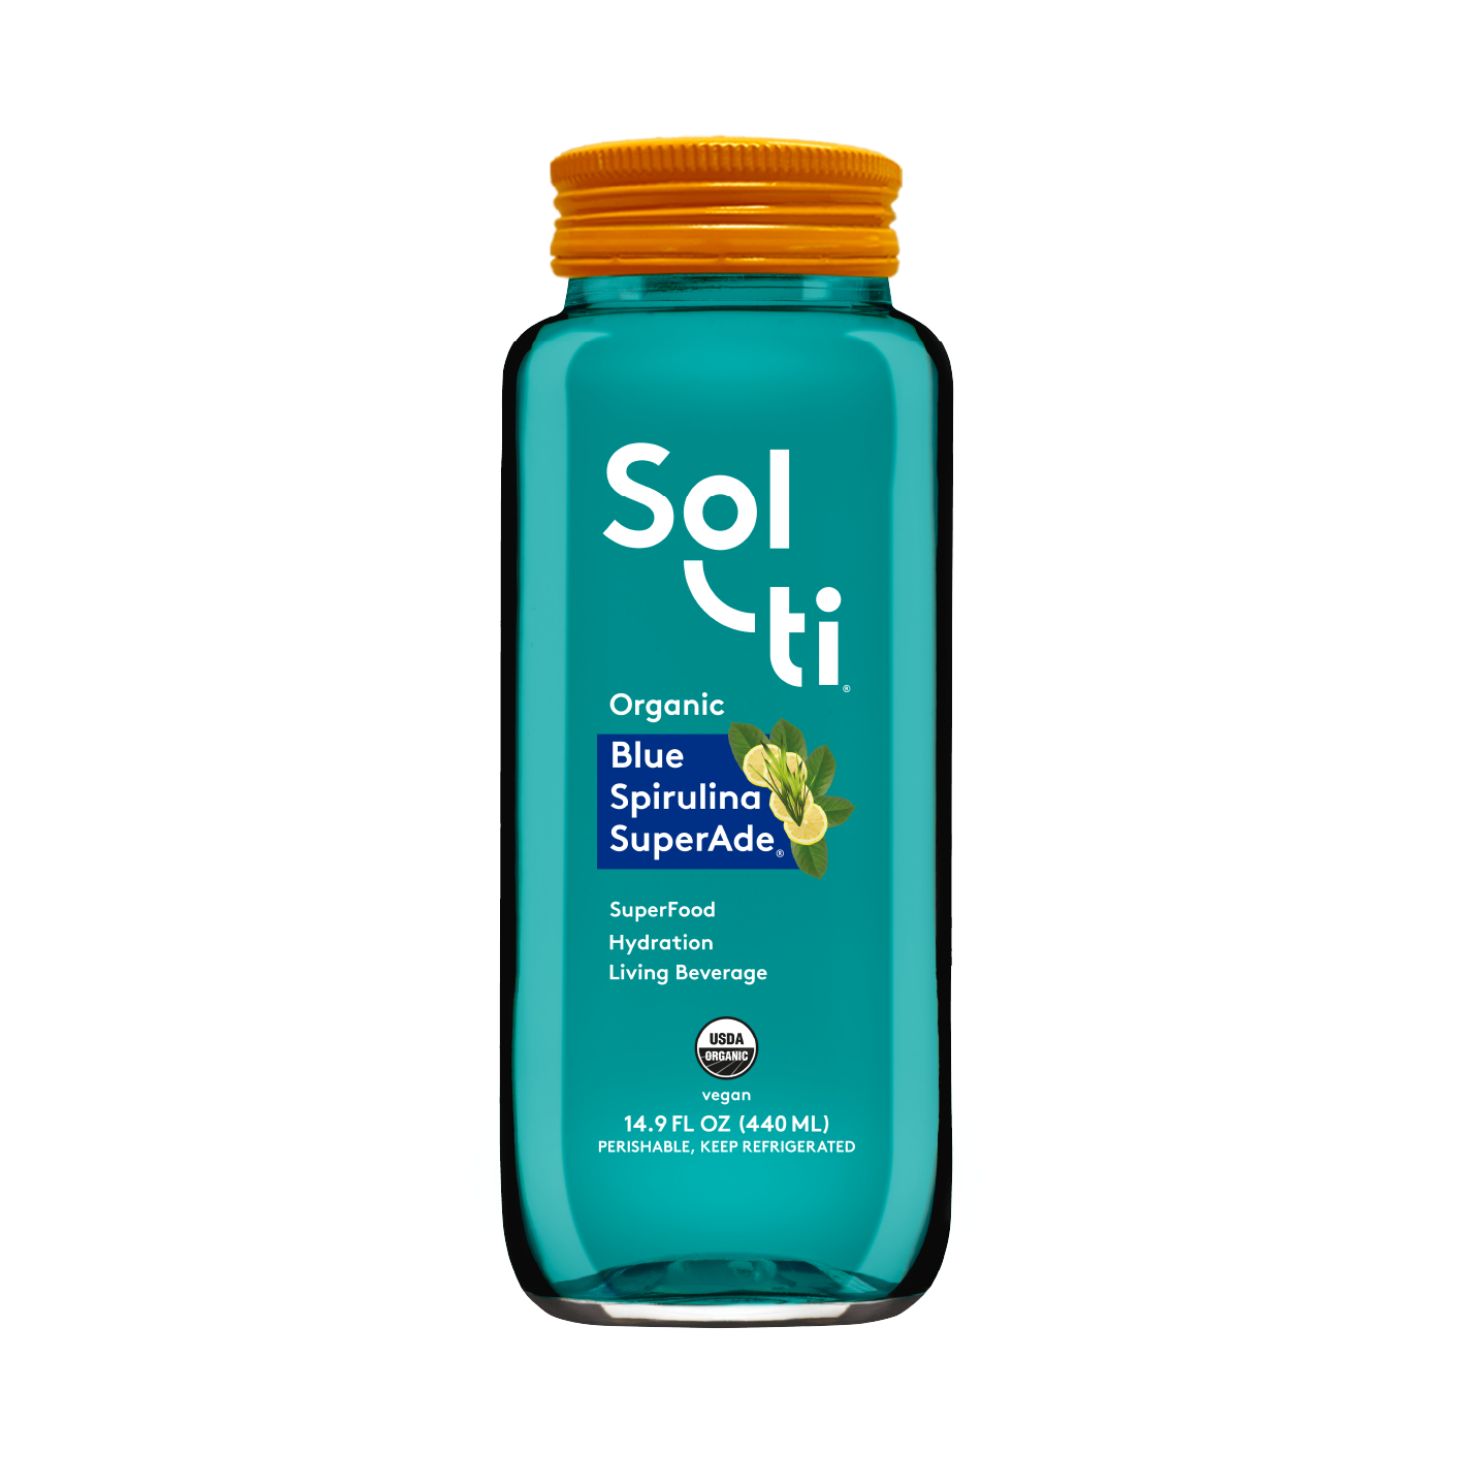 Blue Spirulina Superfood Sea Salt, Gourmet Sea Salt, Artisanal Superfood